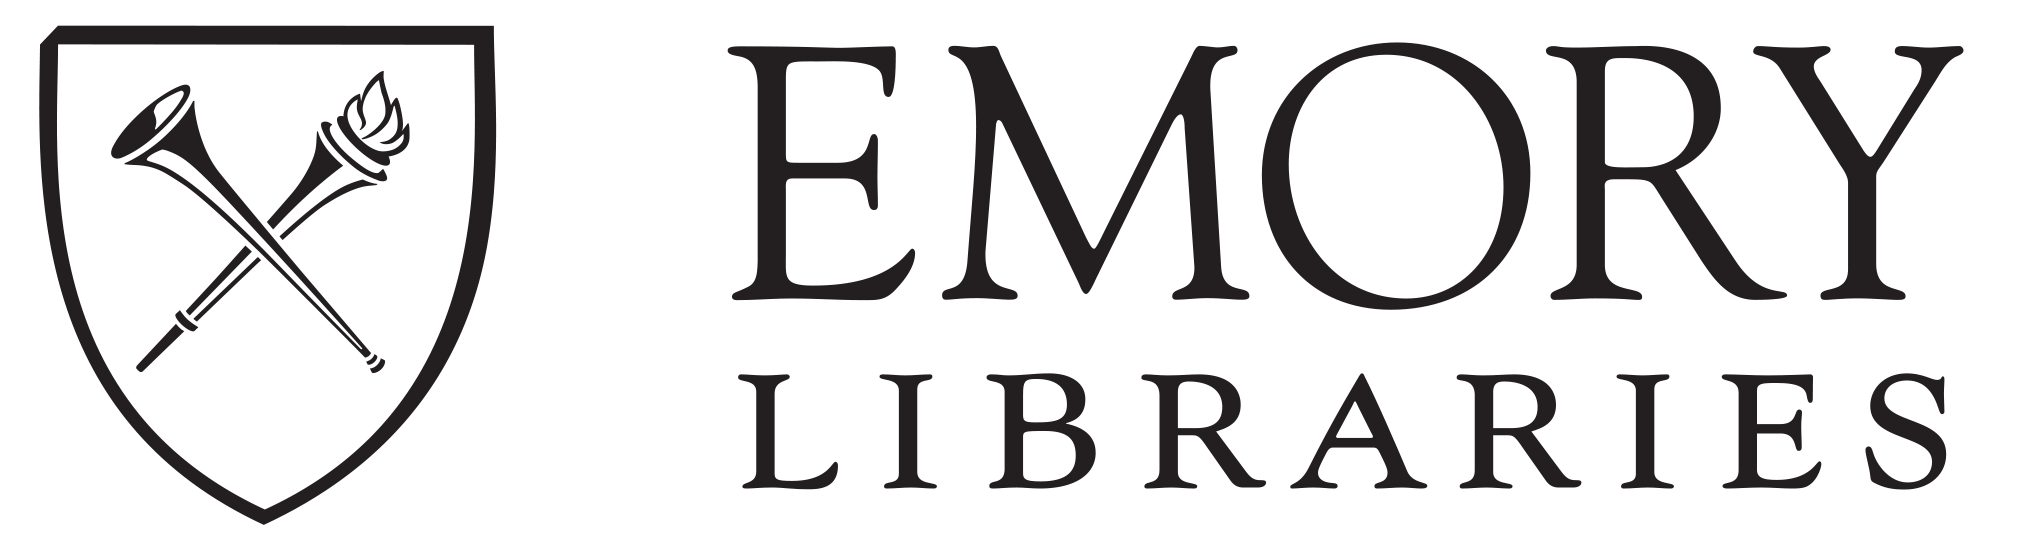 Emory University Libraries logo